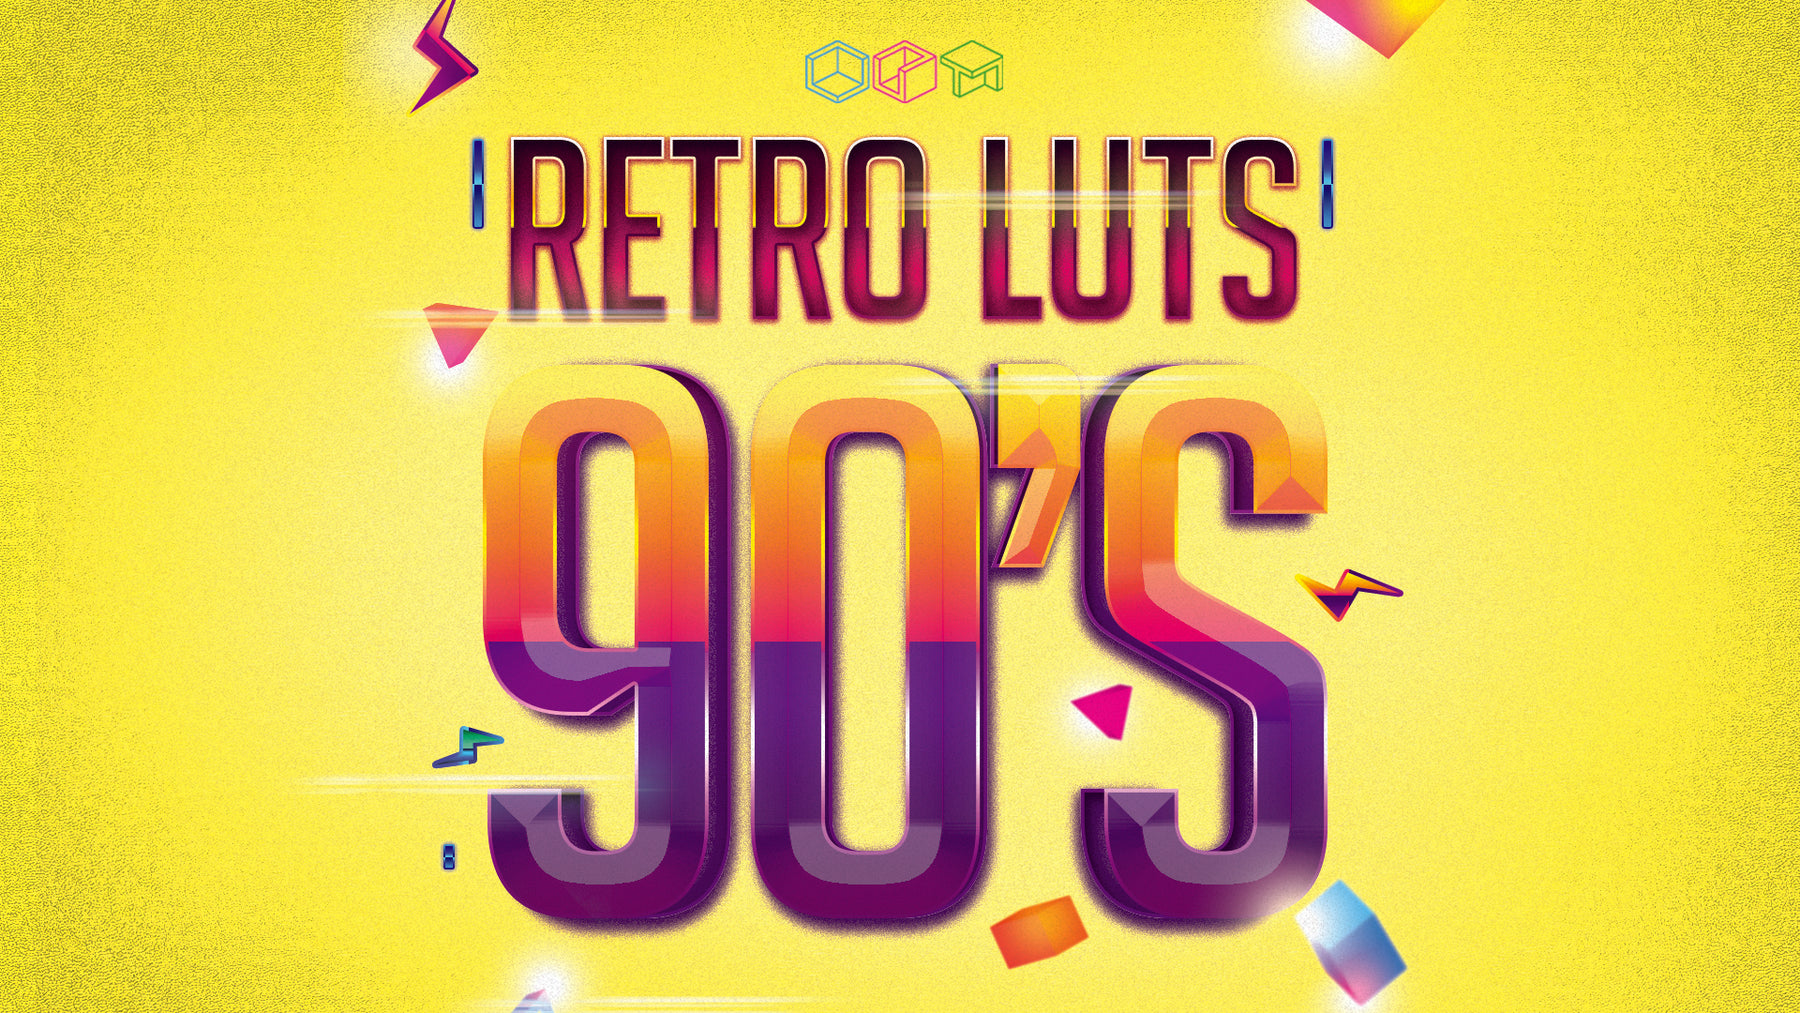 Triune Digital – Retro 90s LUTs